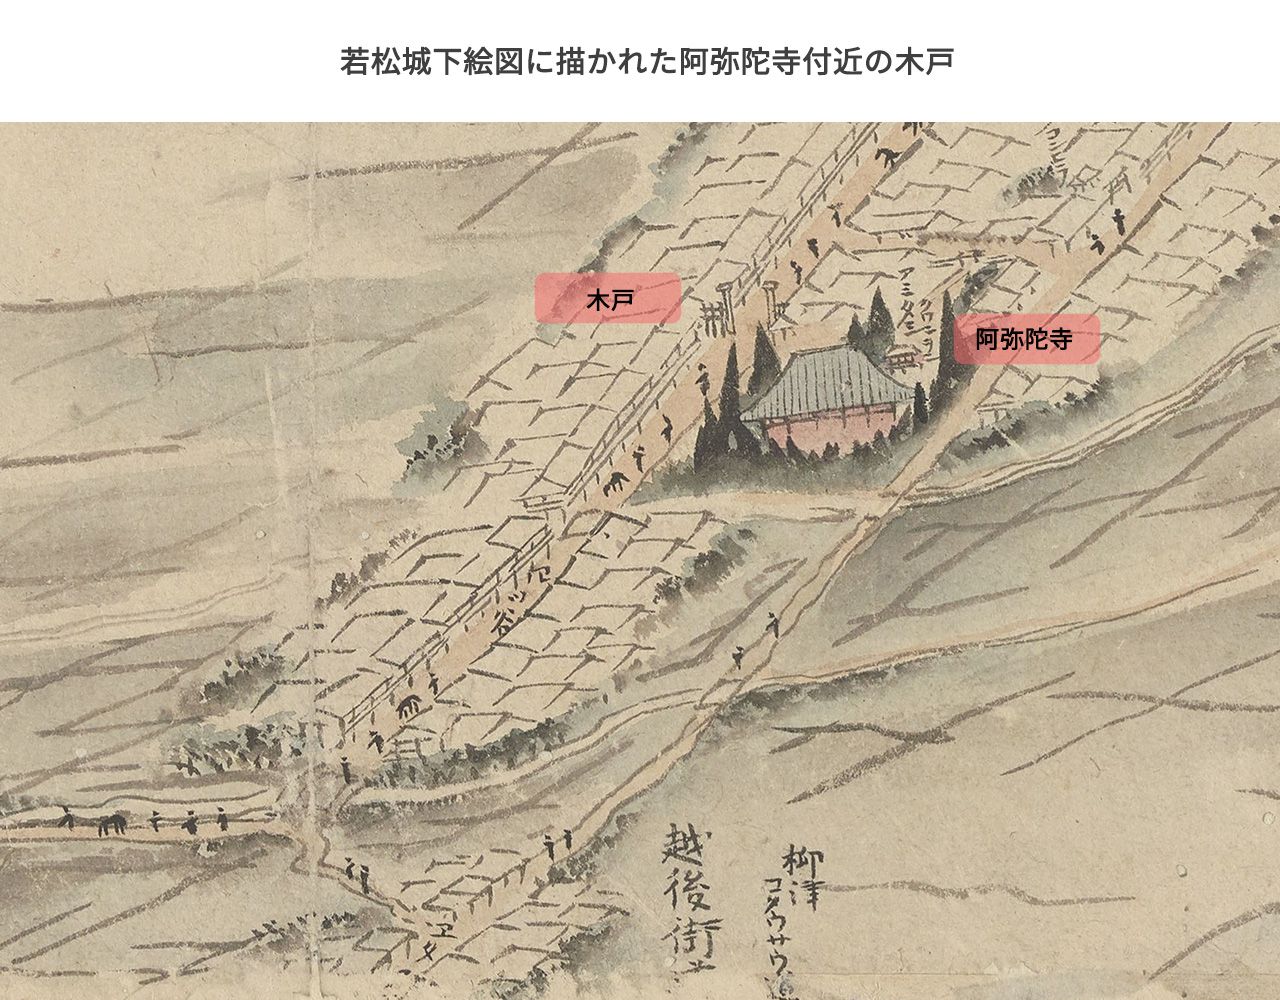 若松城下絵図に描かれた大町四つ角付近